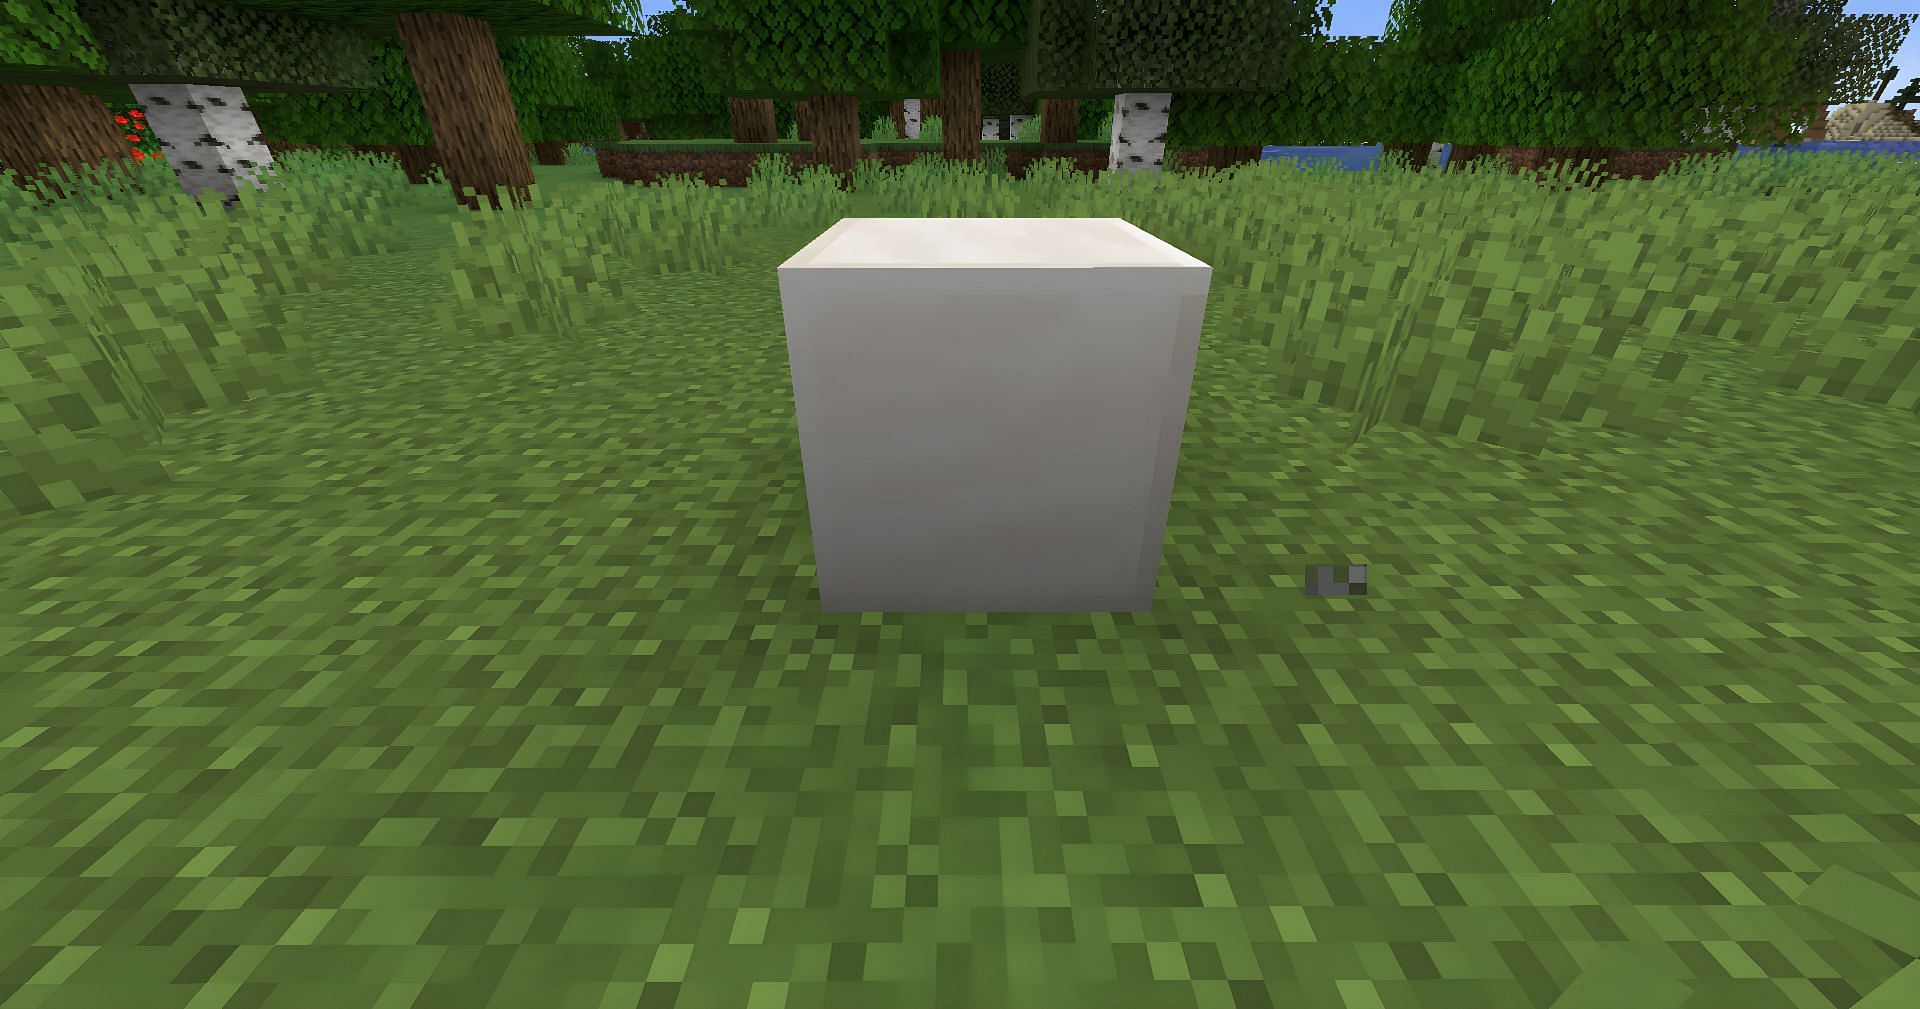 Quartz Block (Image via Minecraft)